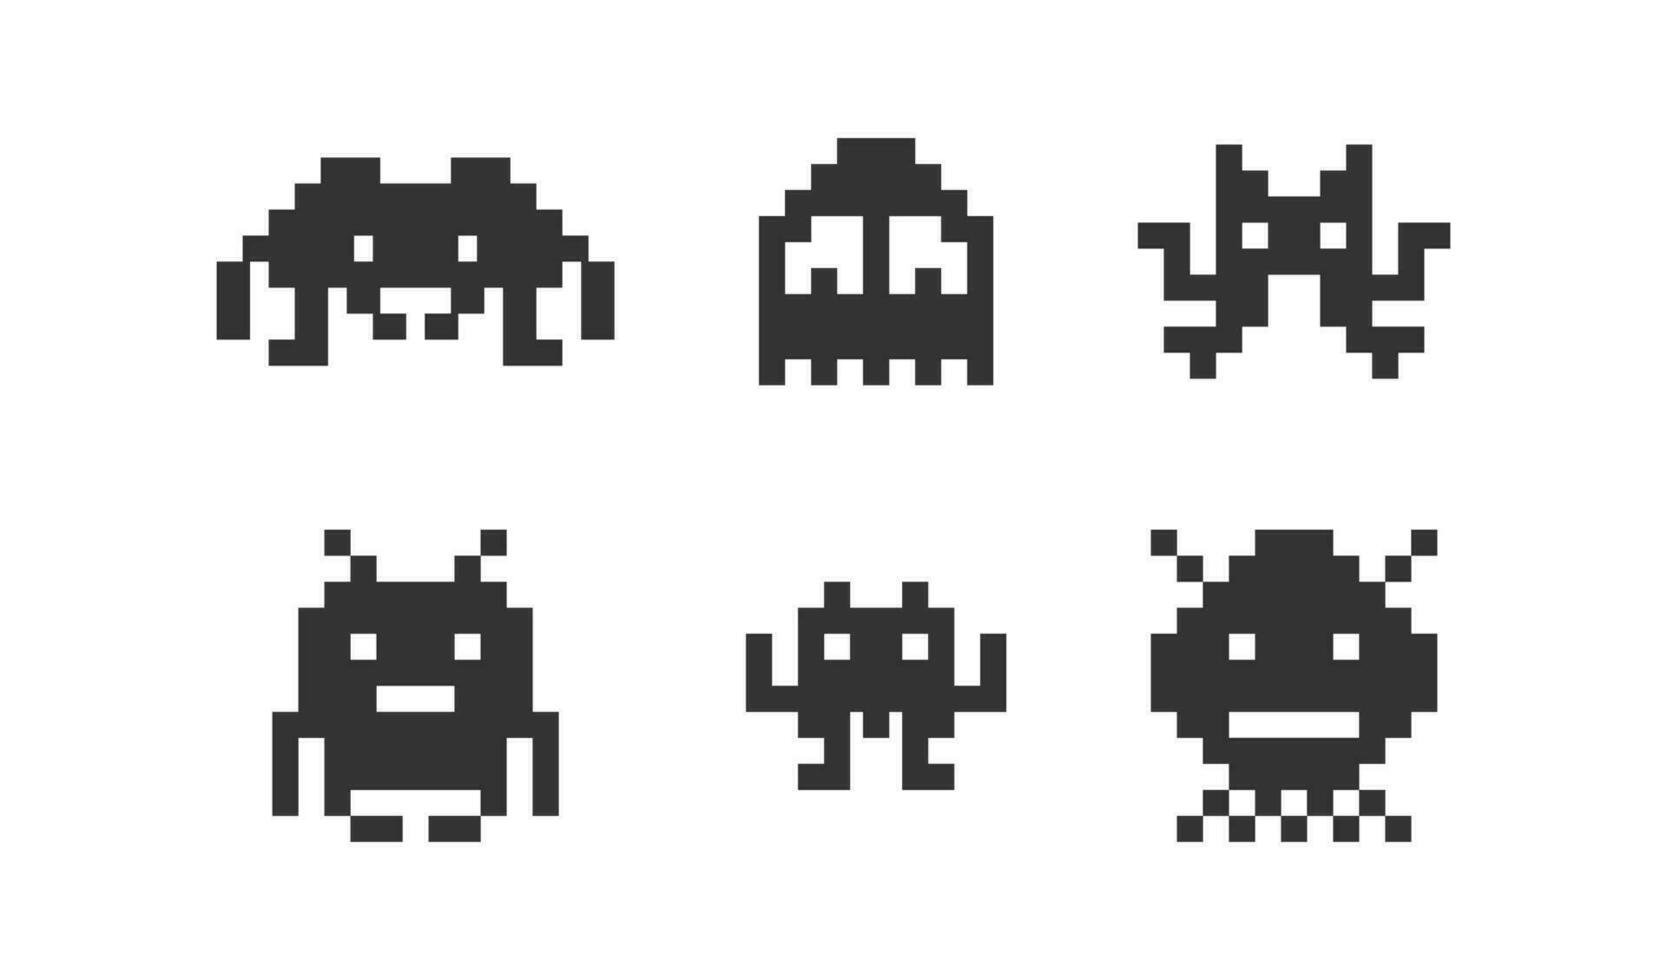 píxel monstruos juego íconos colocar. 8 poco espacio extraterrestre ilustración símbolo. invasores vector plano